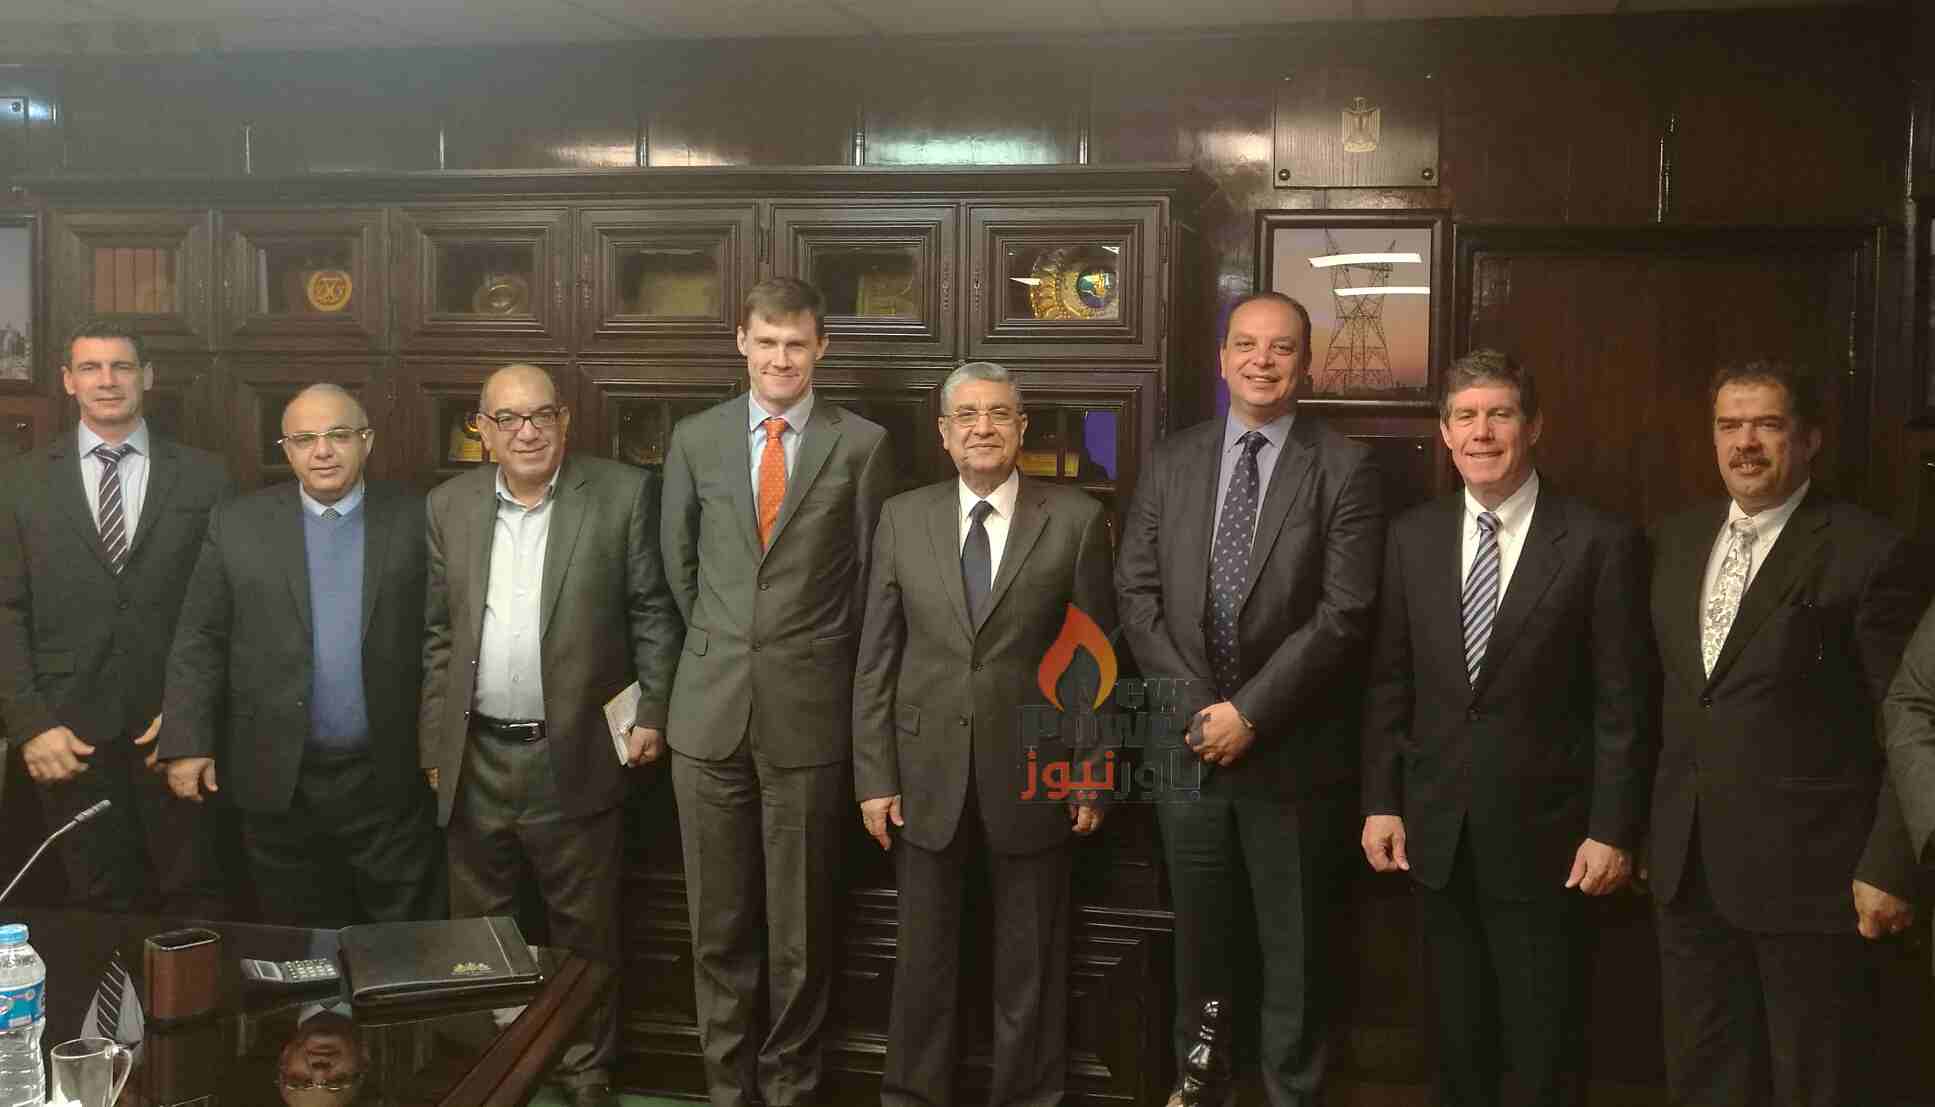 شاكر يستعرض انجازات قطاع الكهرباء المصرى مع شركةCDC البريطانية  بحضور سفير المملكة المتحدة  بالقاهرة